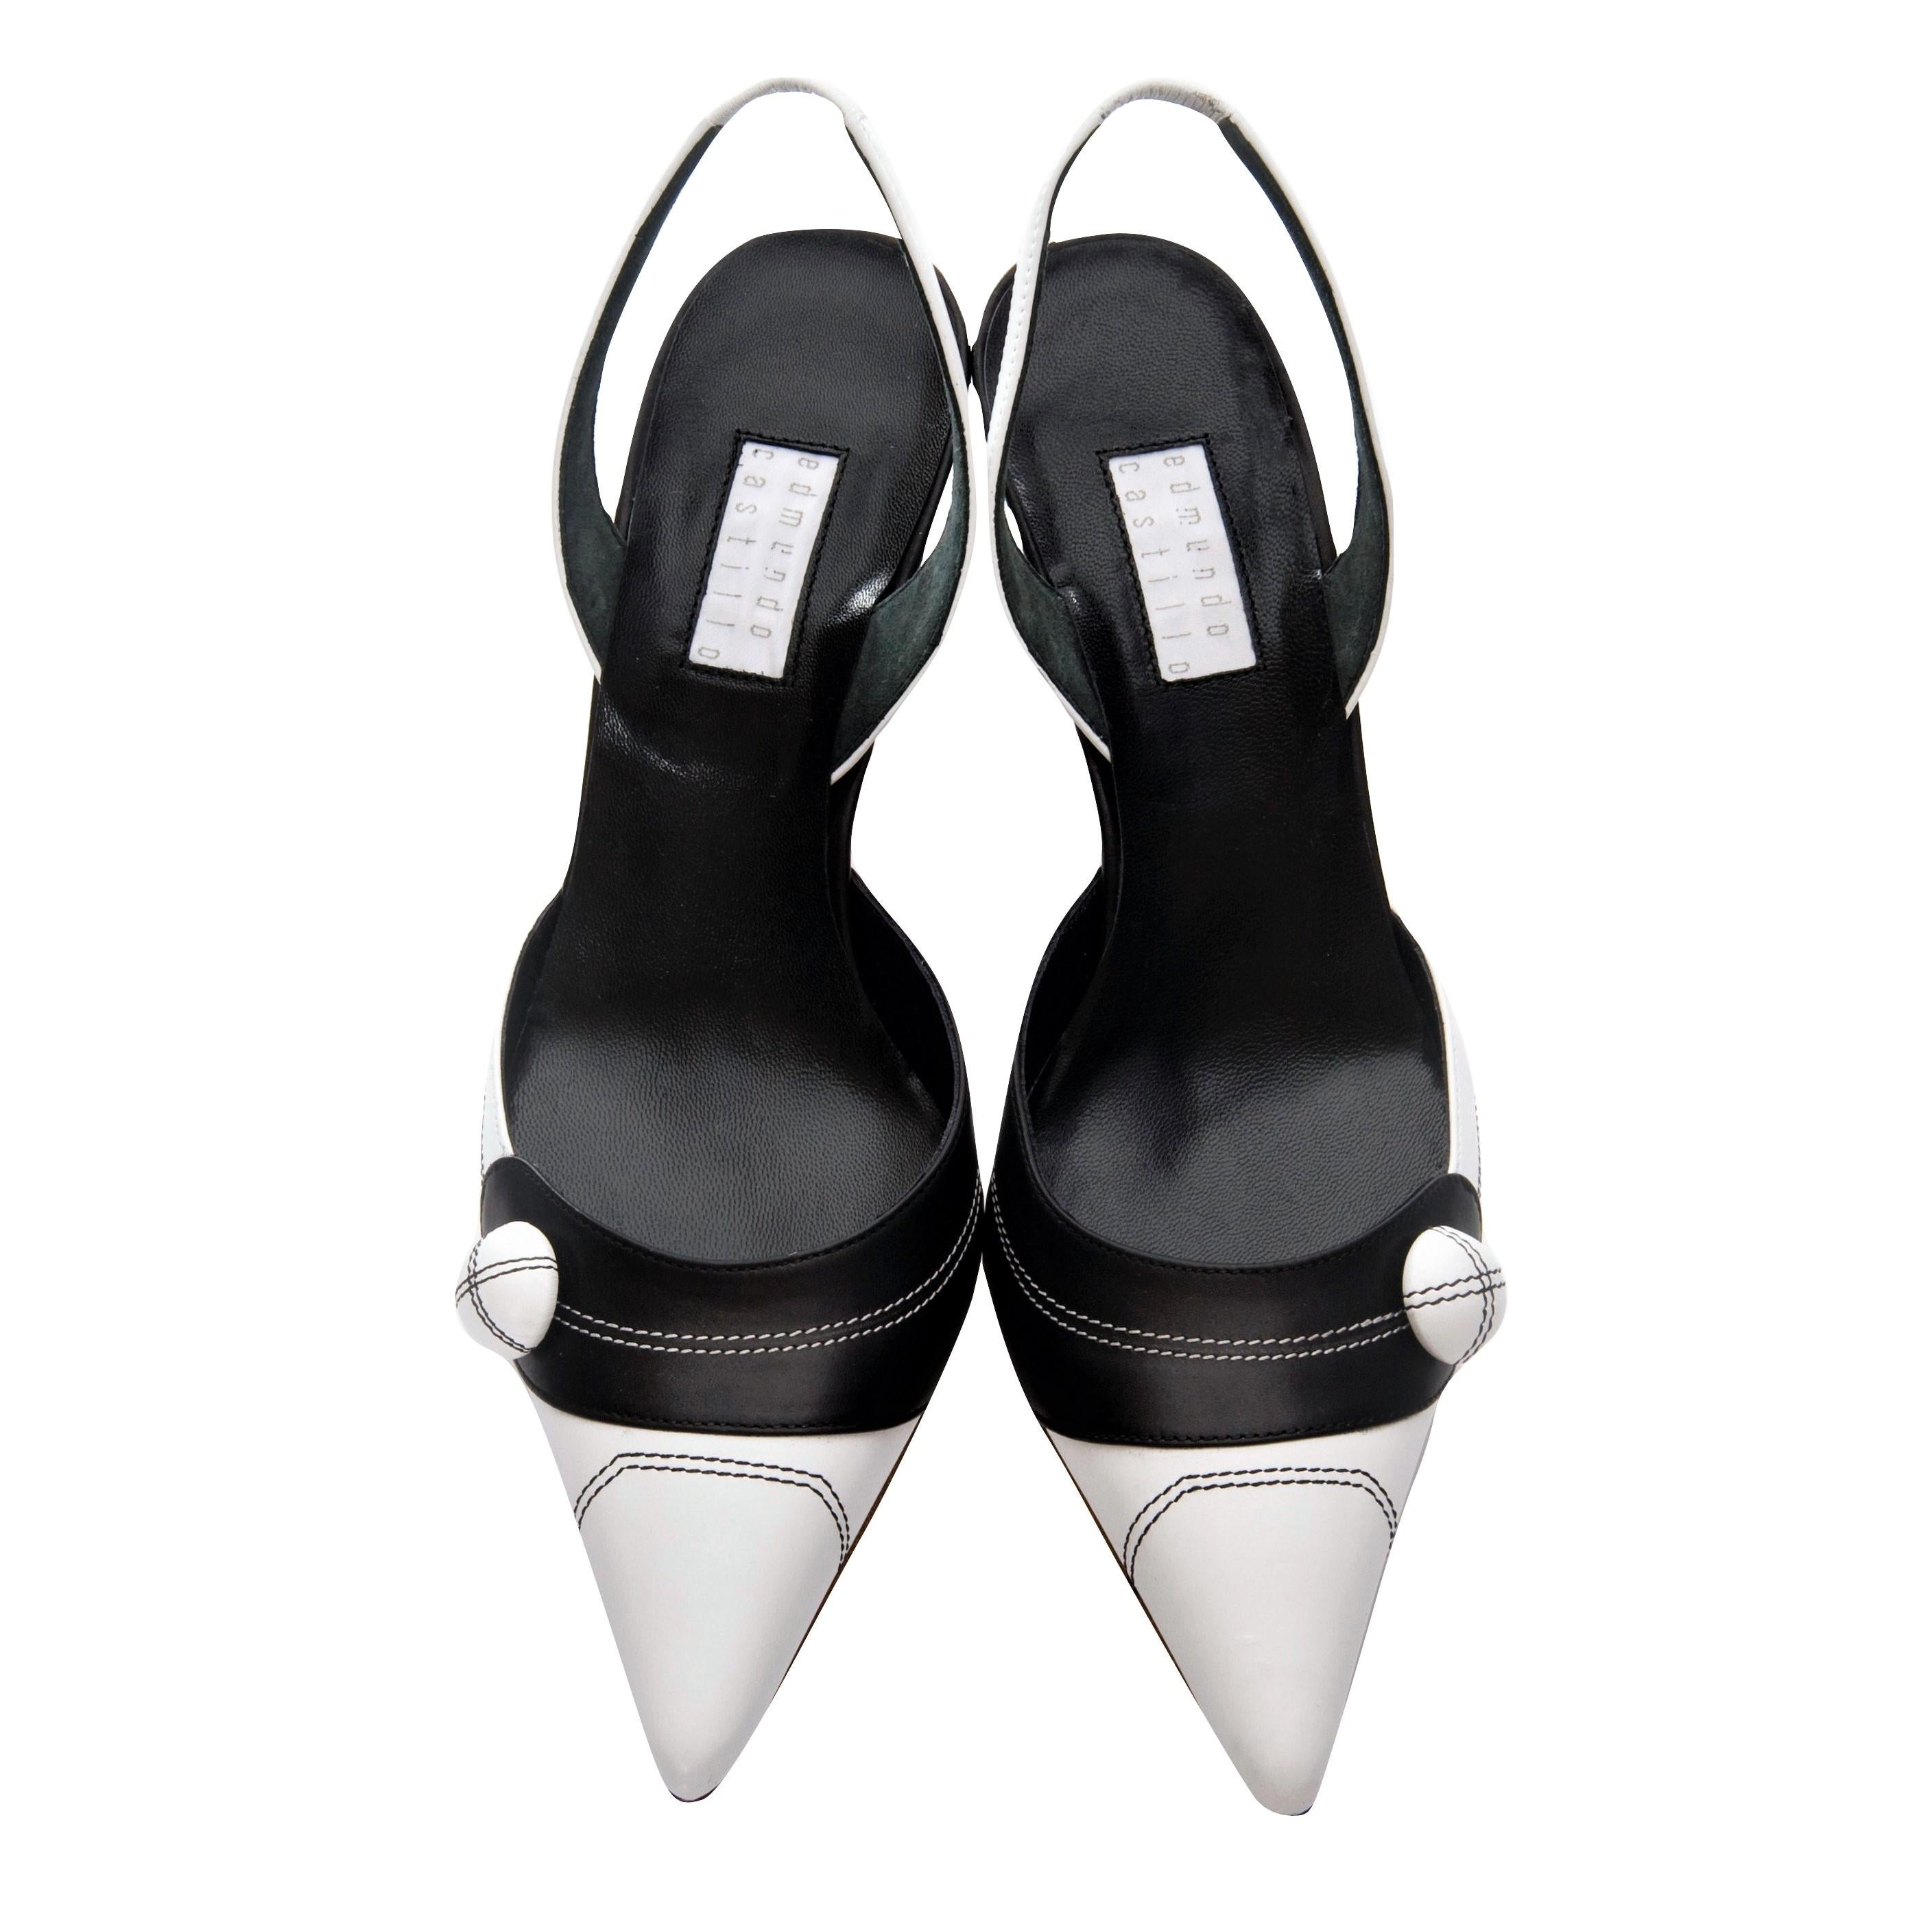 Women's New Edmundo Castillo Black & White Leather Slingback Heels Sz 7